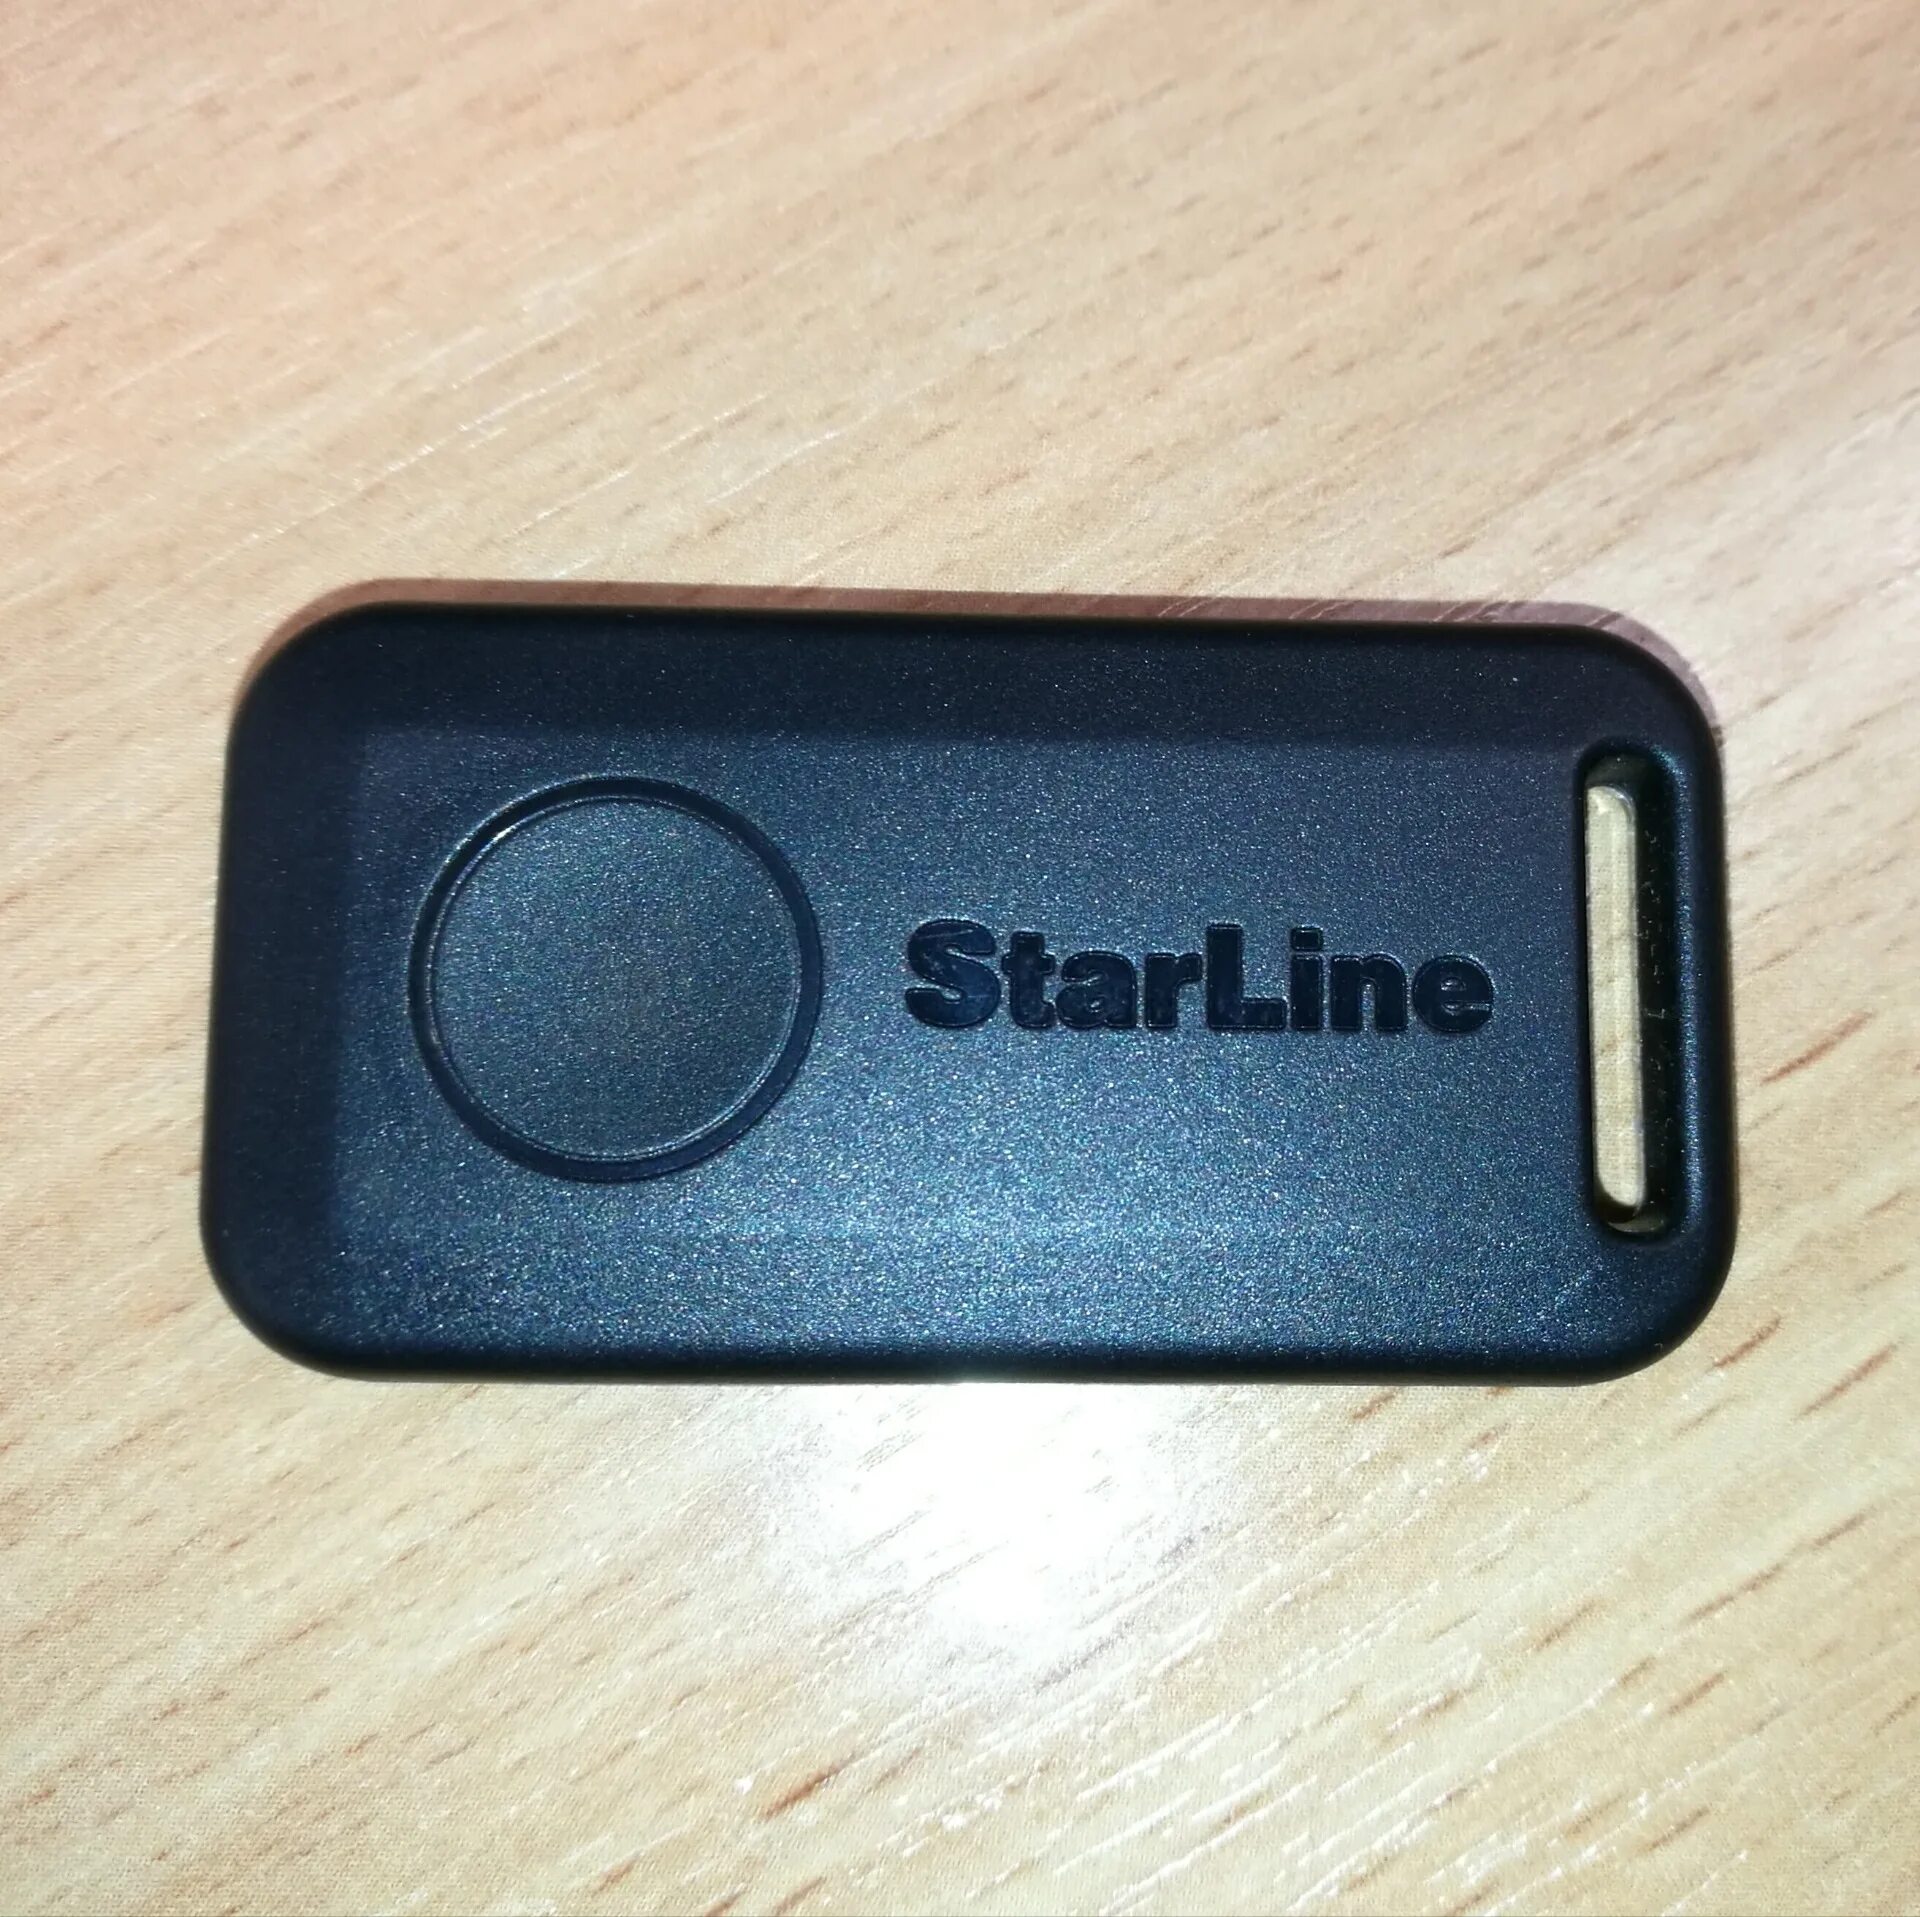 Метка е96. Метка STARLINE s96. Старлайн s96. Сигнализация STARLINE s96 v2. STARLINE a96 v2 брелок.